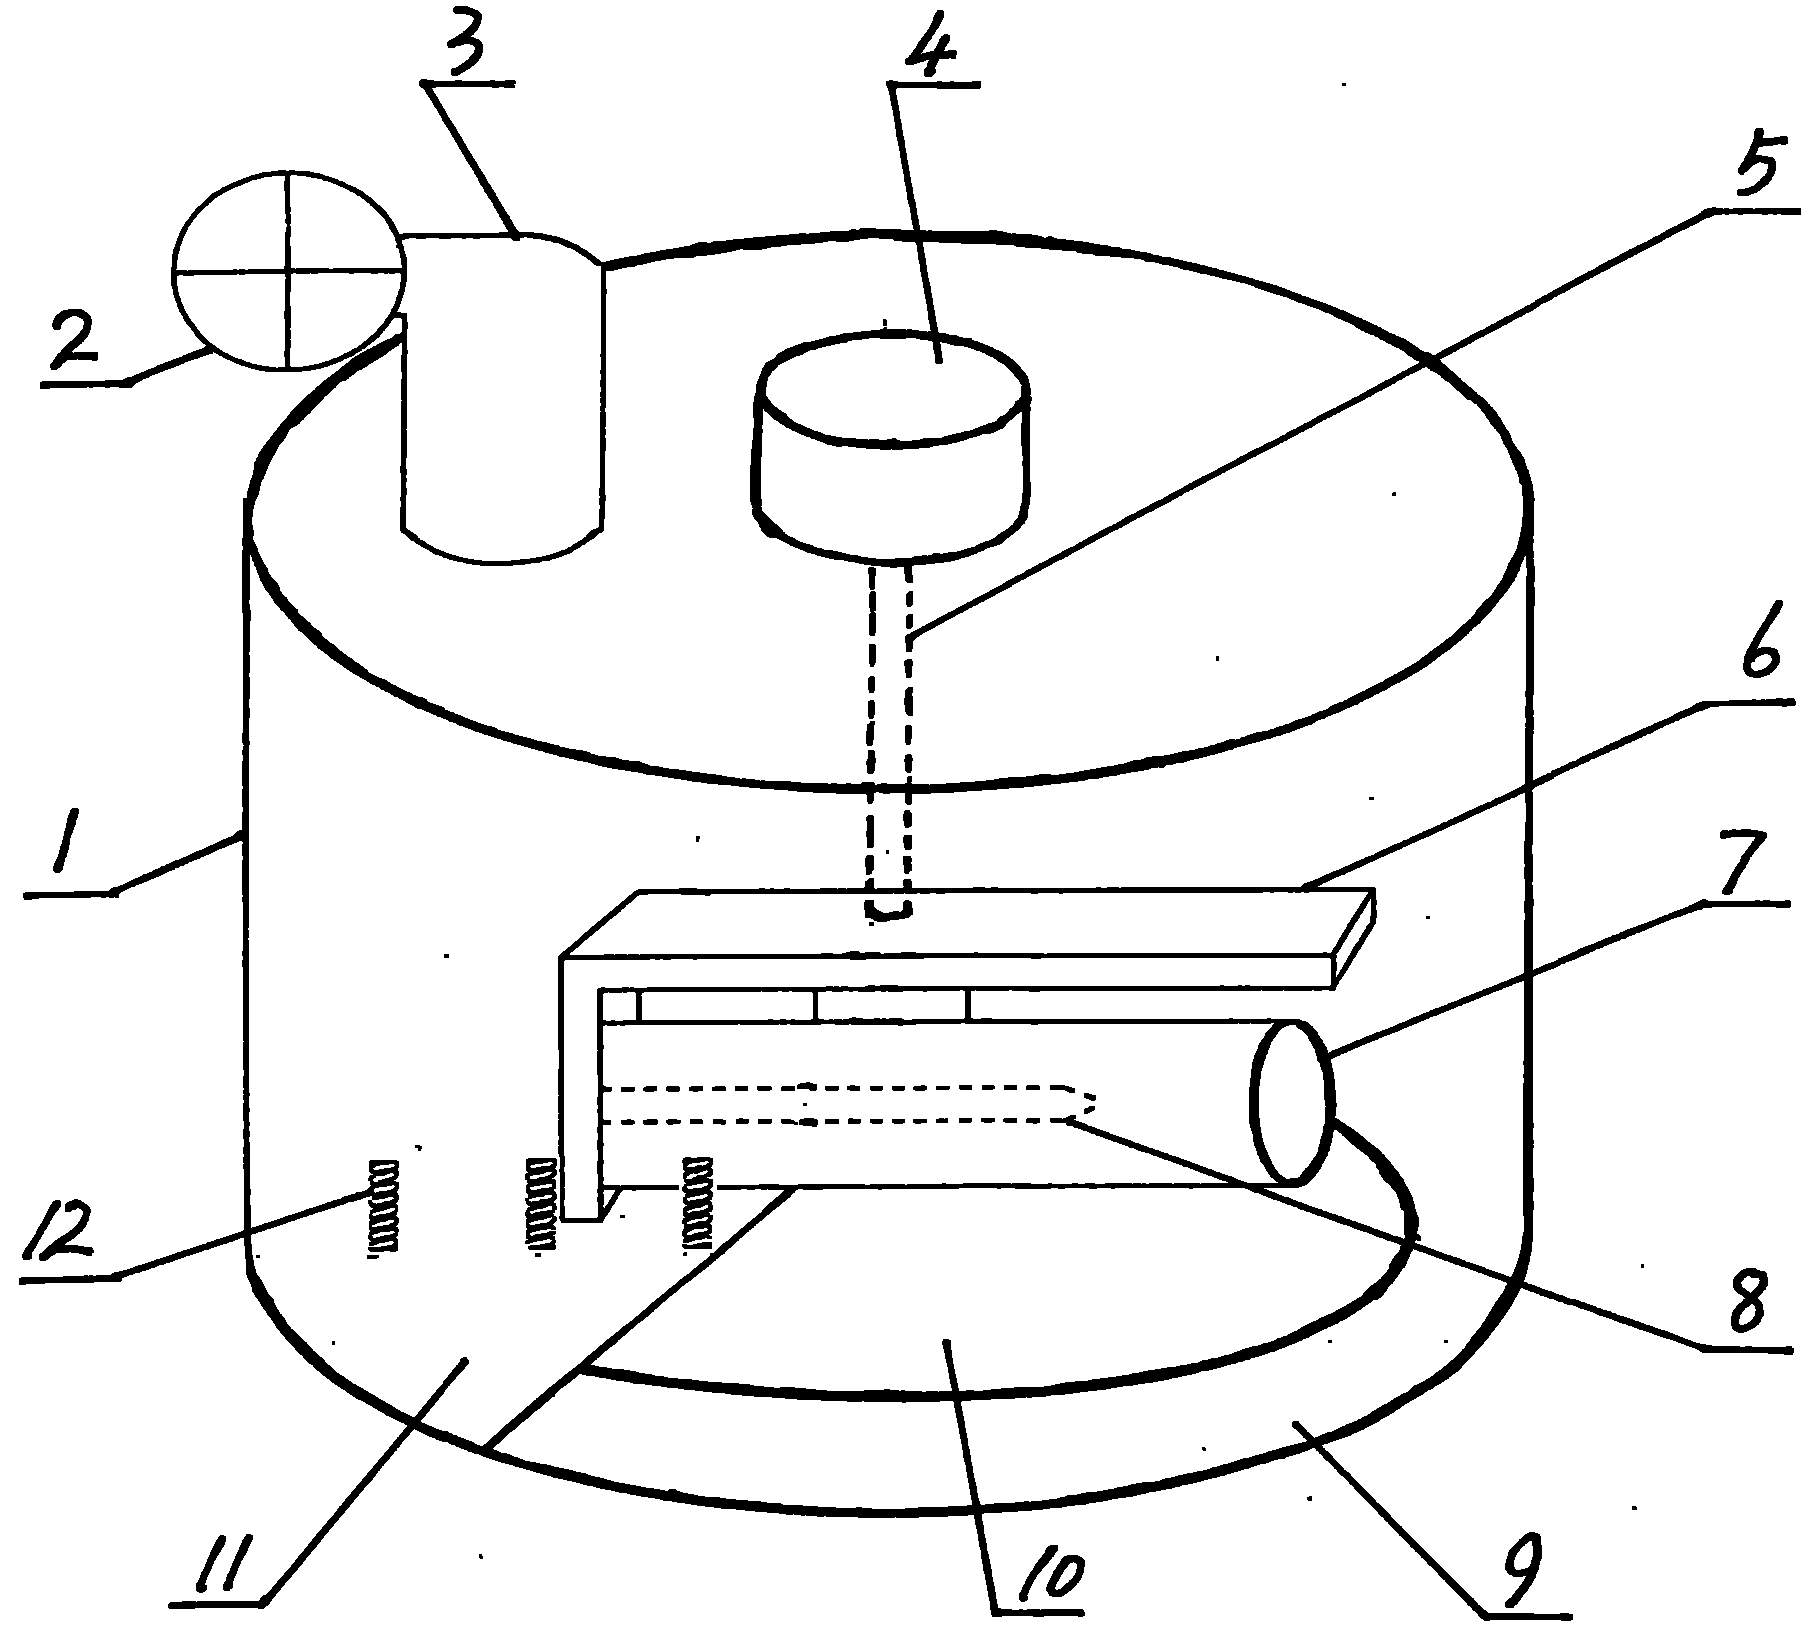 Program-controlled moxibustion device